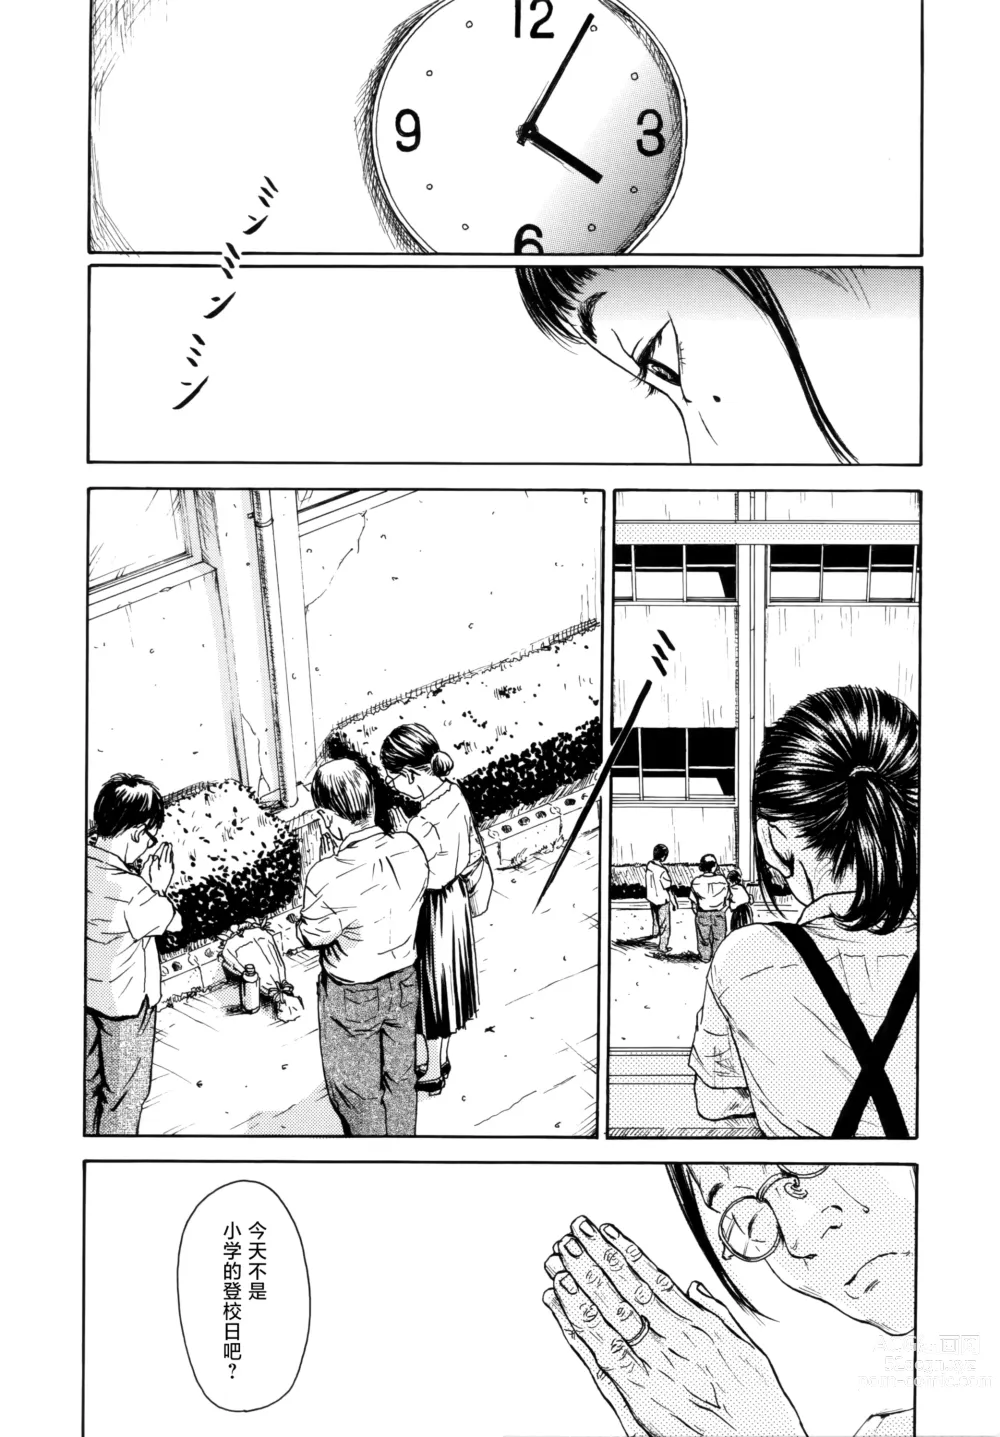 Page 4 of manga Hanako to Tarou no Natsuyasumi